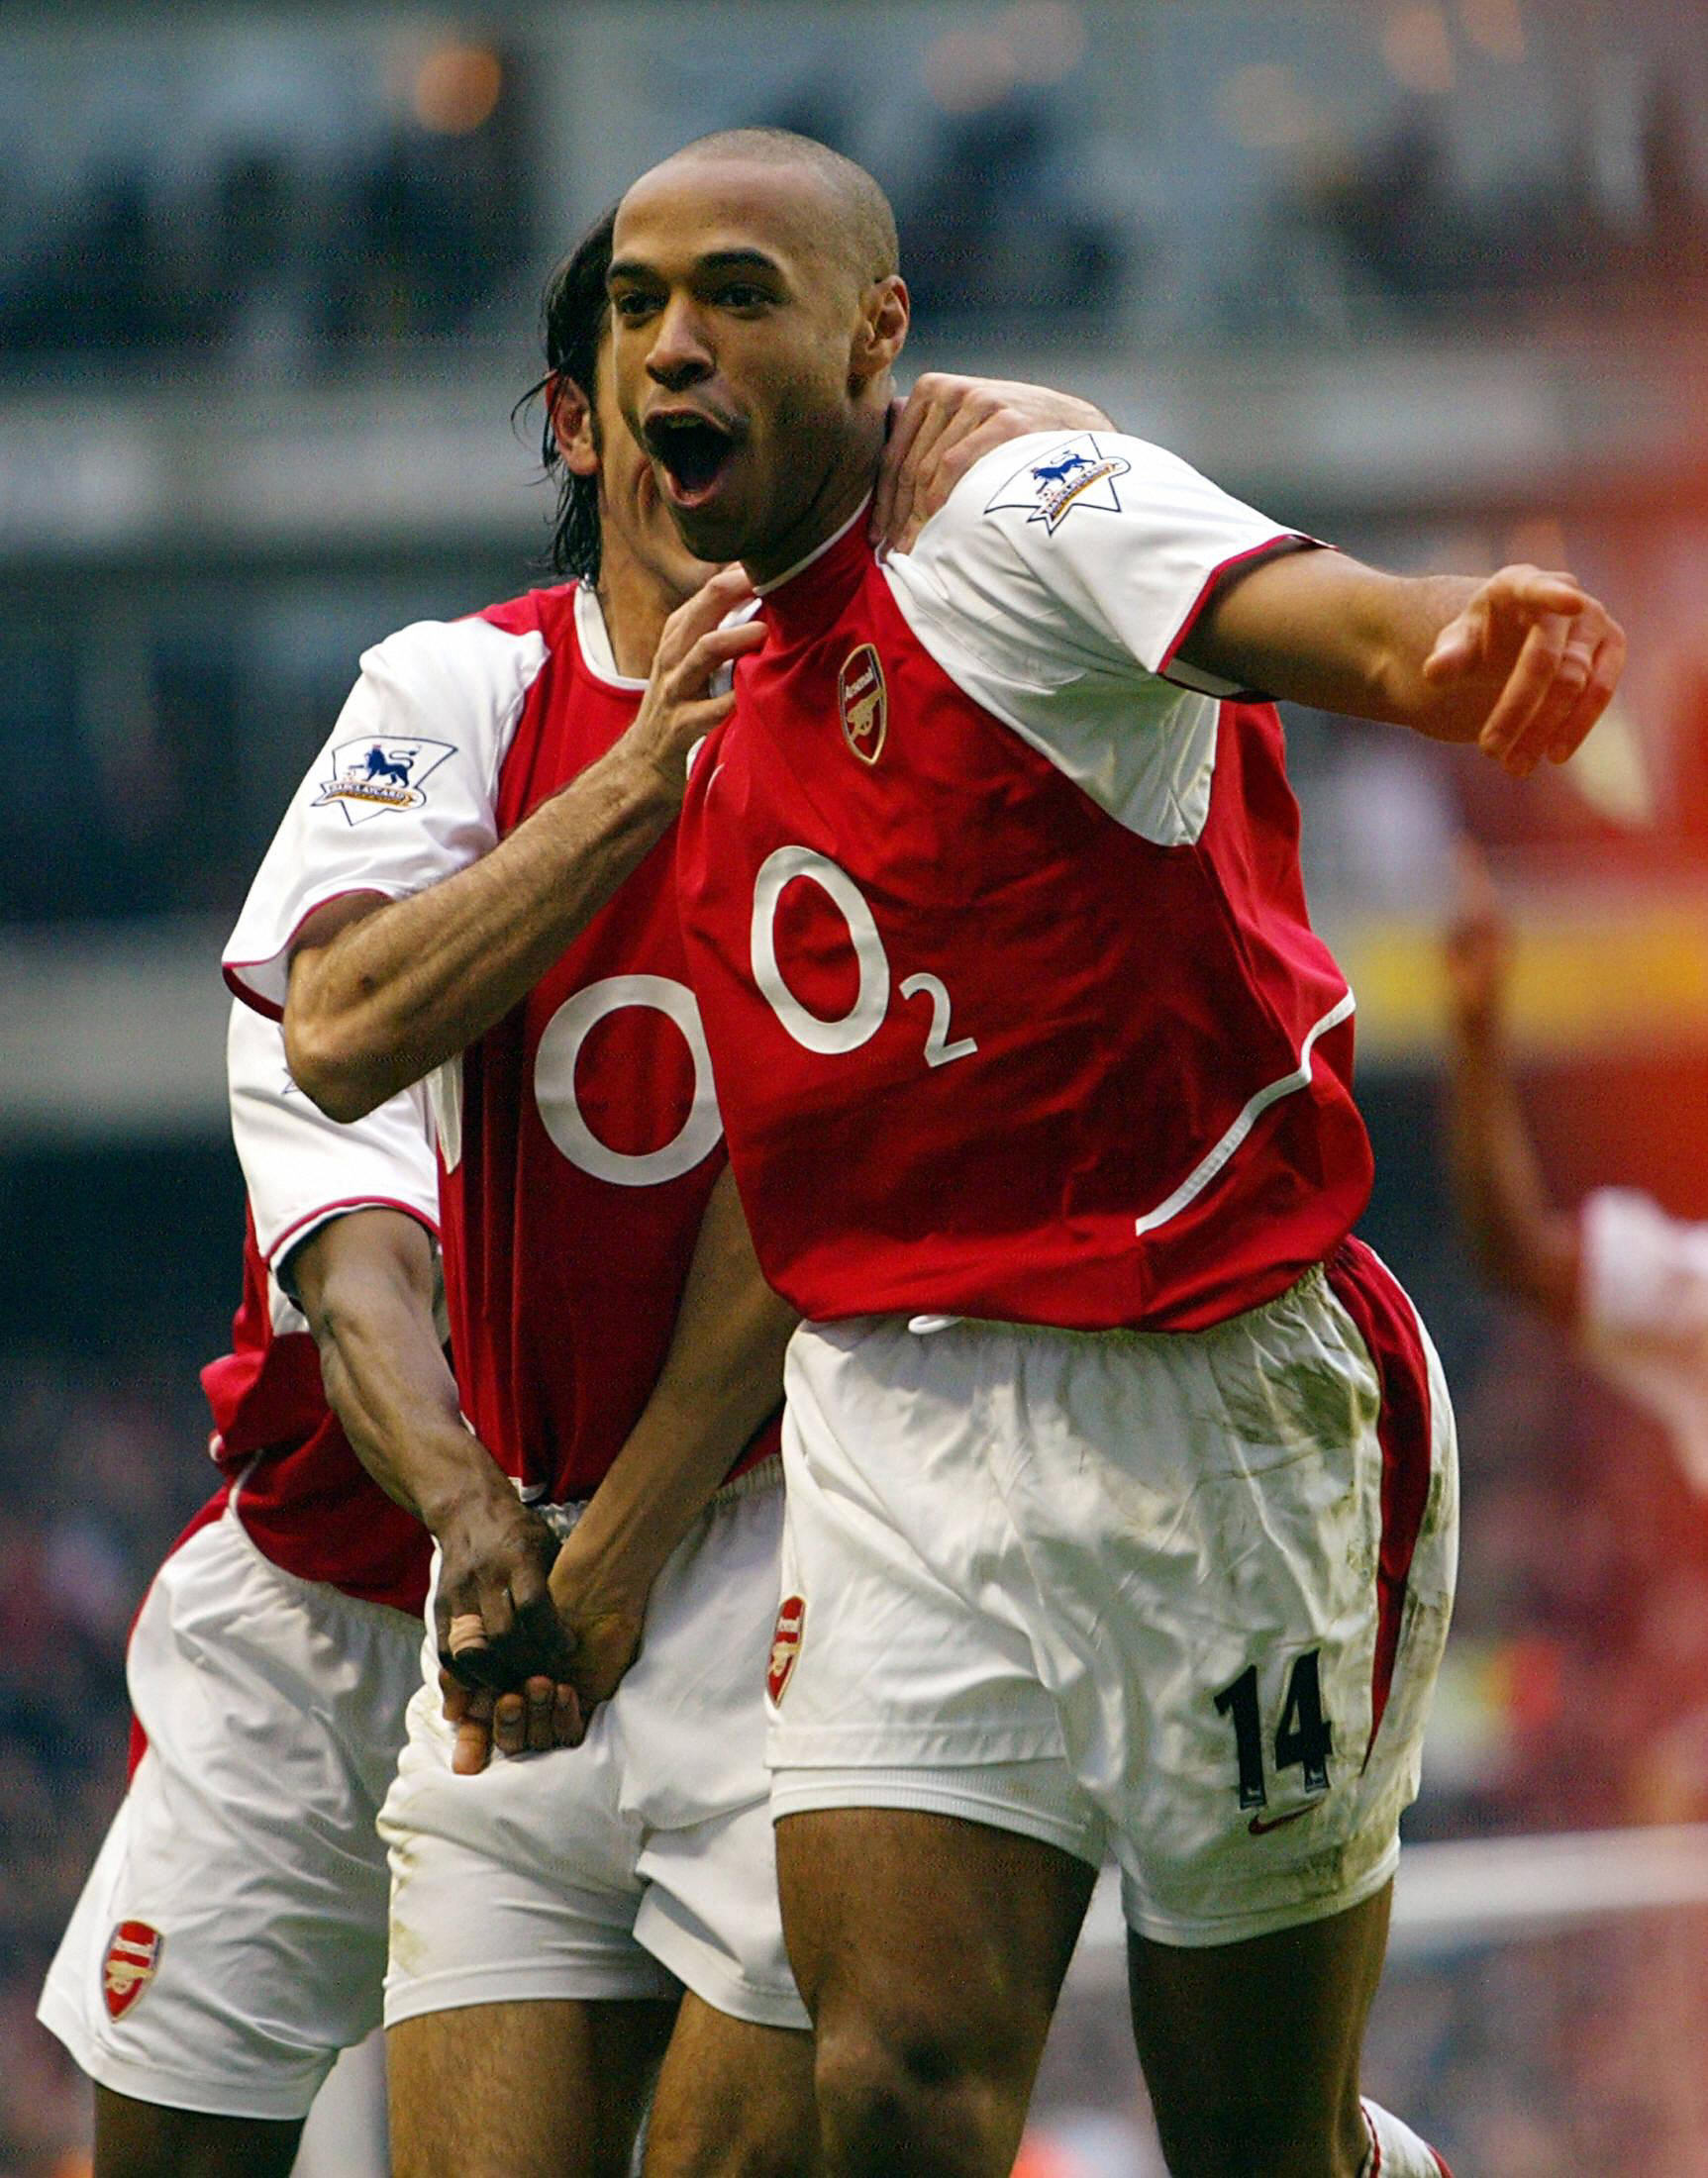 Der 16-Jährige ist offenbar nach der Ikone von Arsenal und Frankreich benannt: Thierry Henry